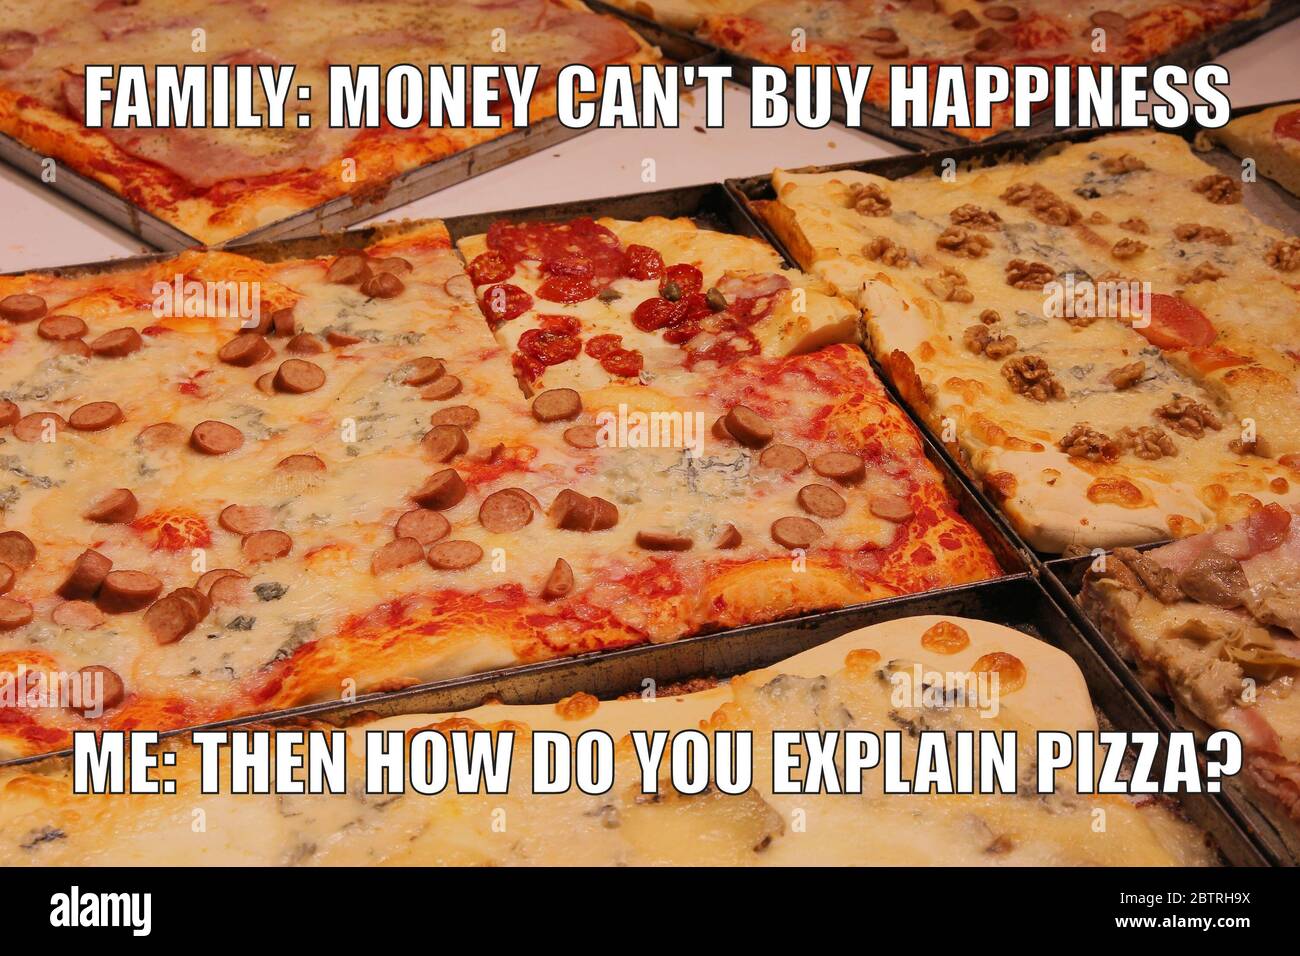 Pizza divertente meme per la condivisione dei social media. I soldi non possono comprare la felicità. Foto Stock